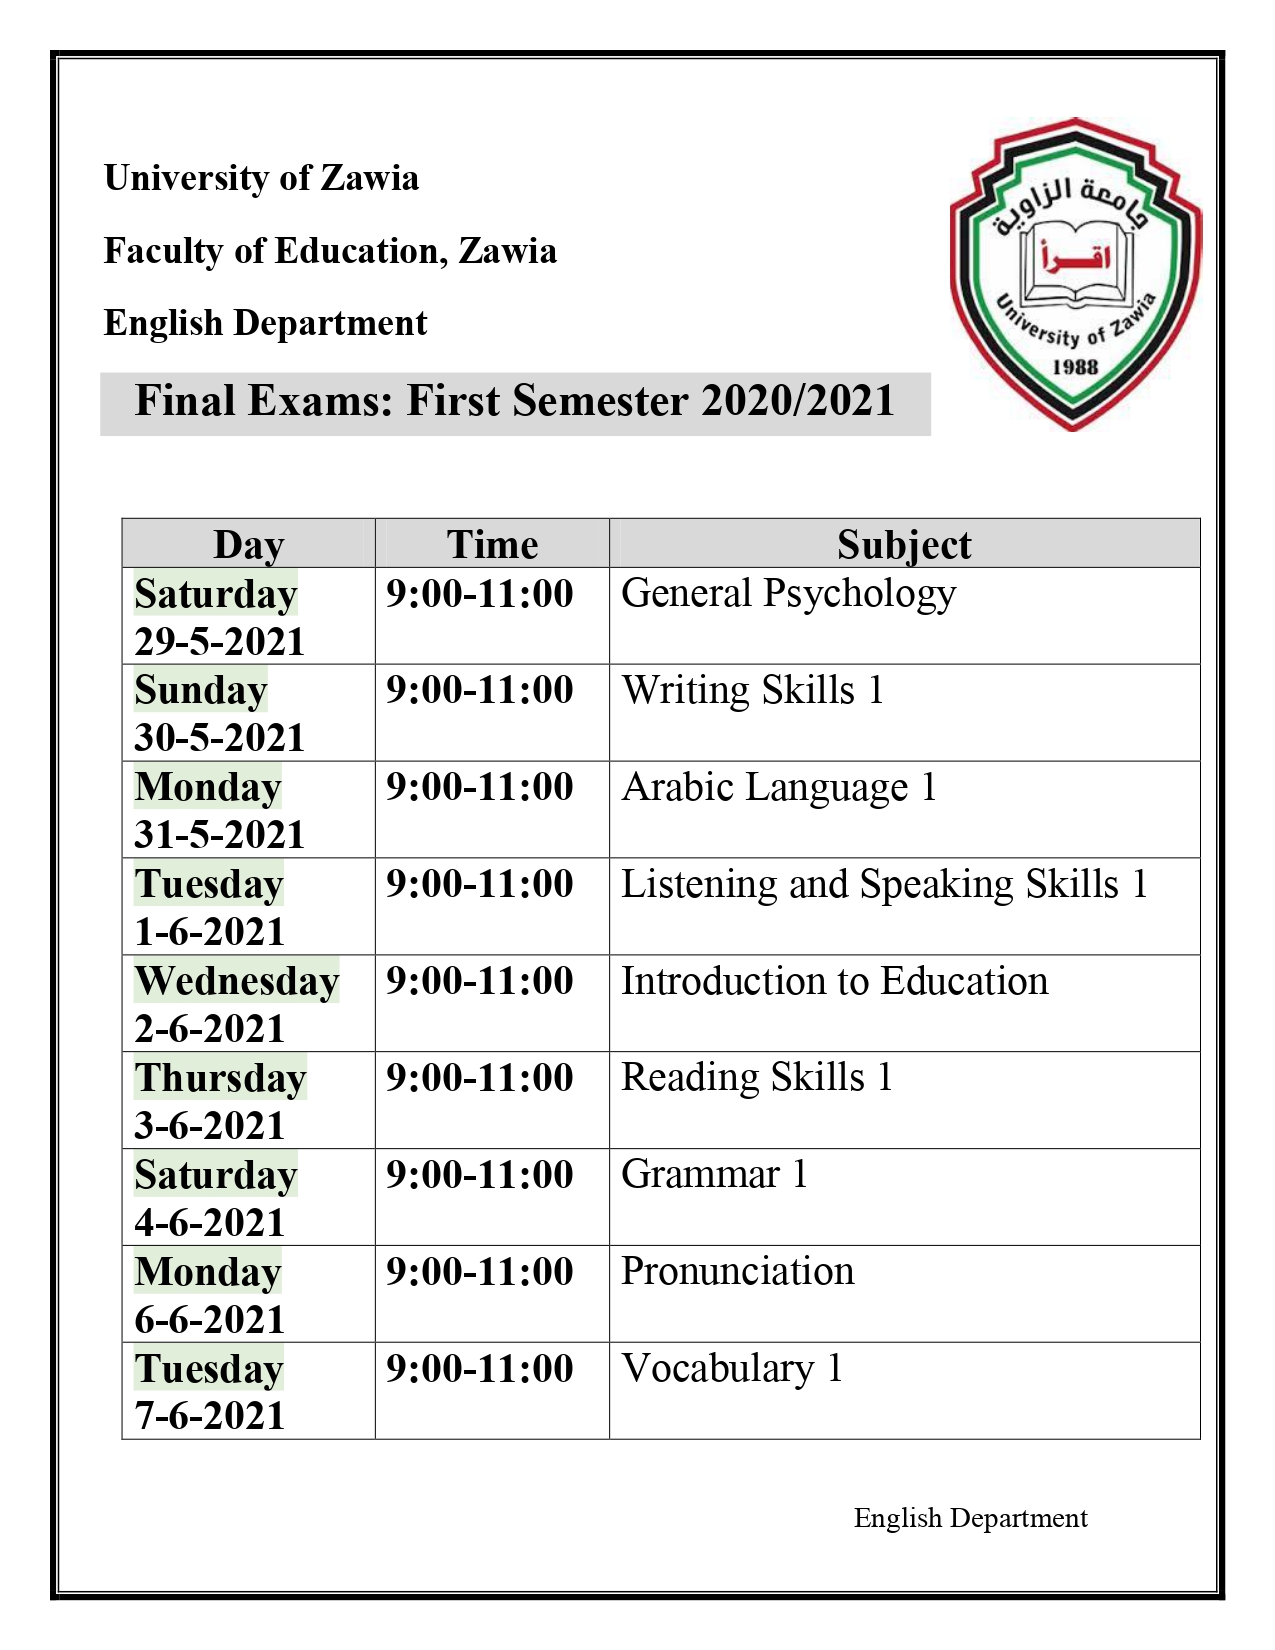 جدول الامتحان النهائي للفصل الأول بقسم اللغة الإنجليزية